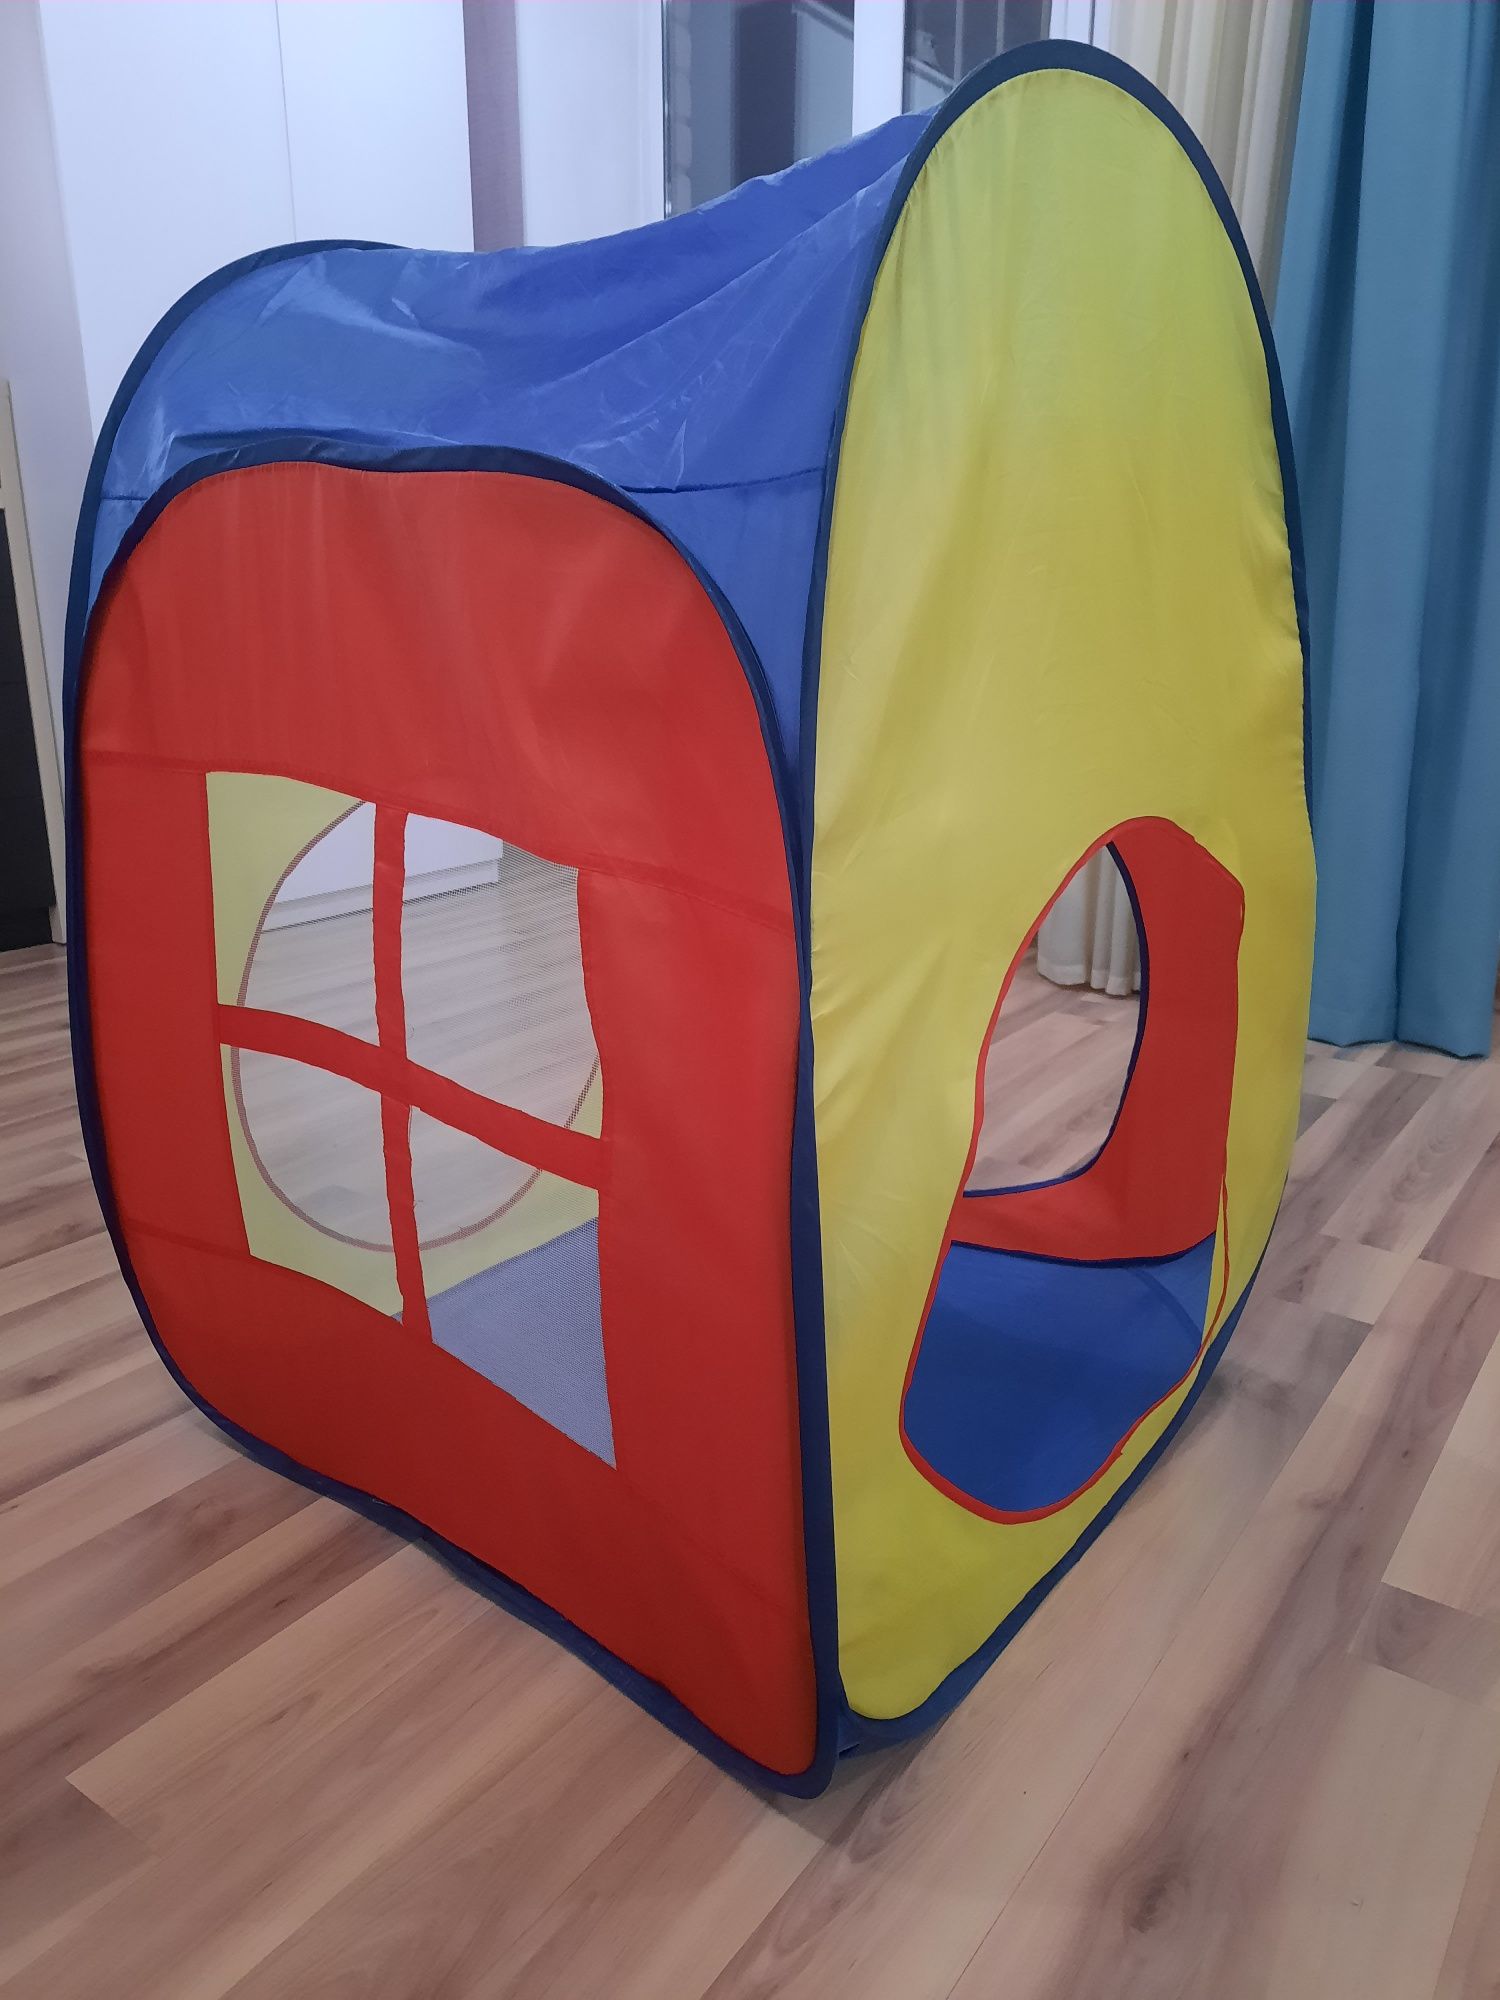 Продам домик-палатку детскую